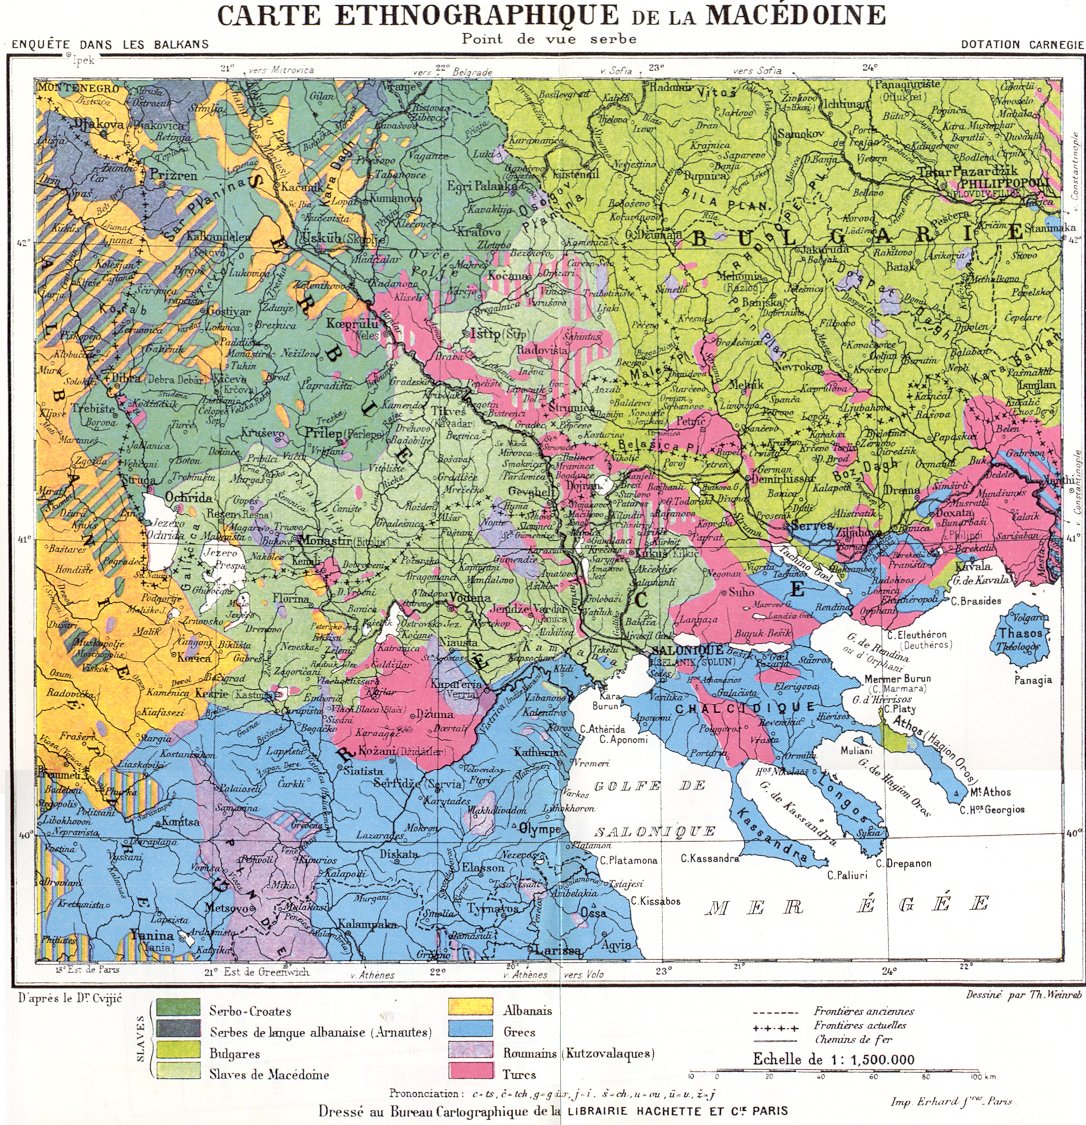 Македония - етнографска карта (сръбска)